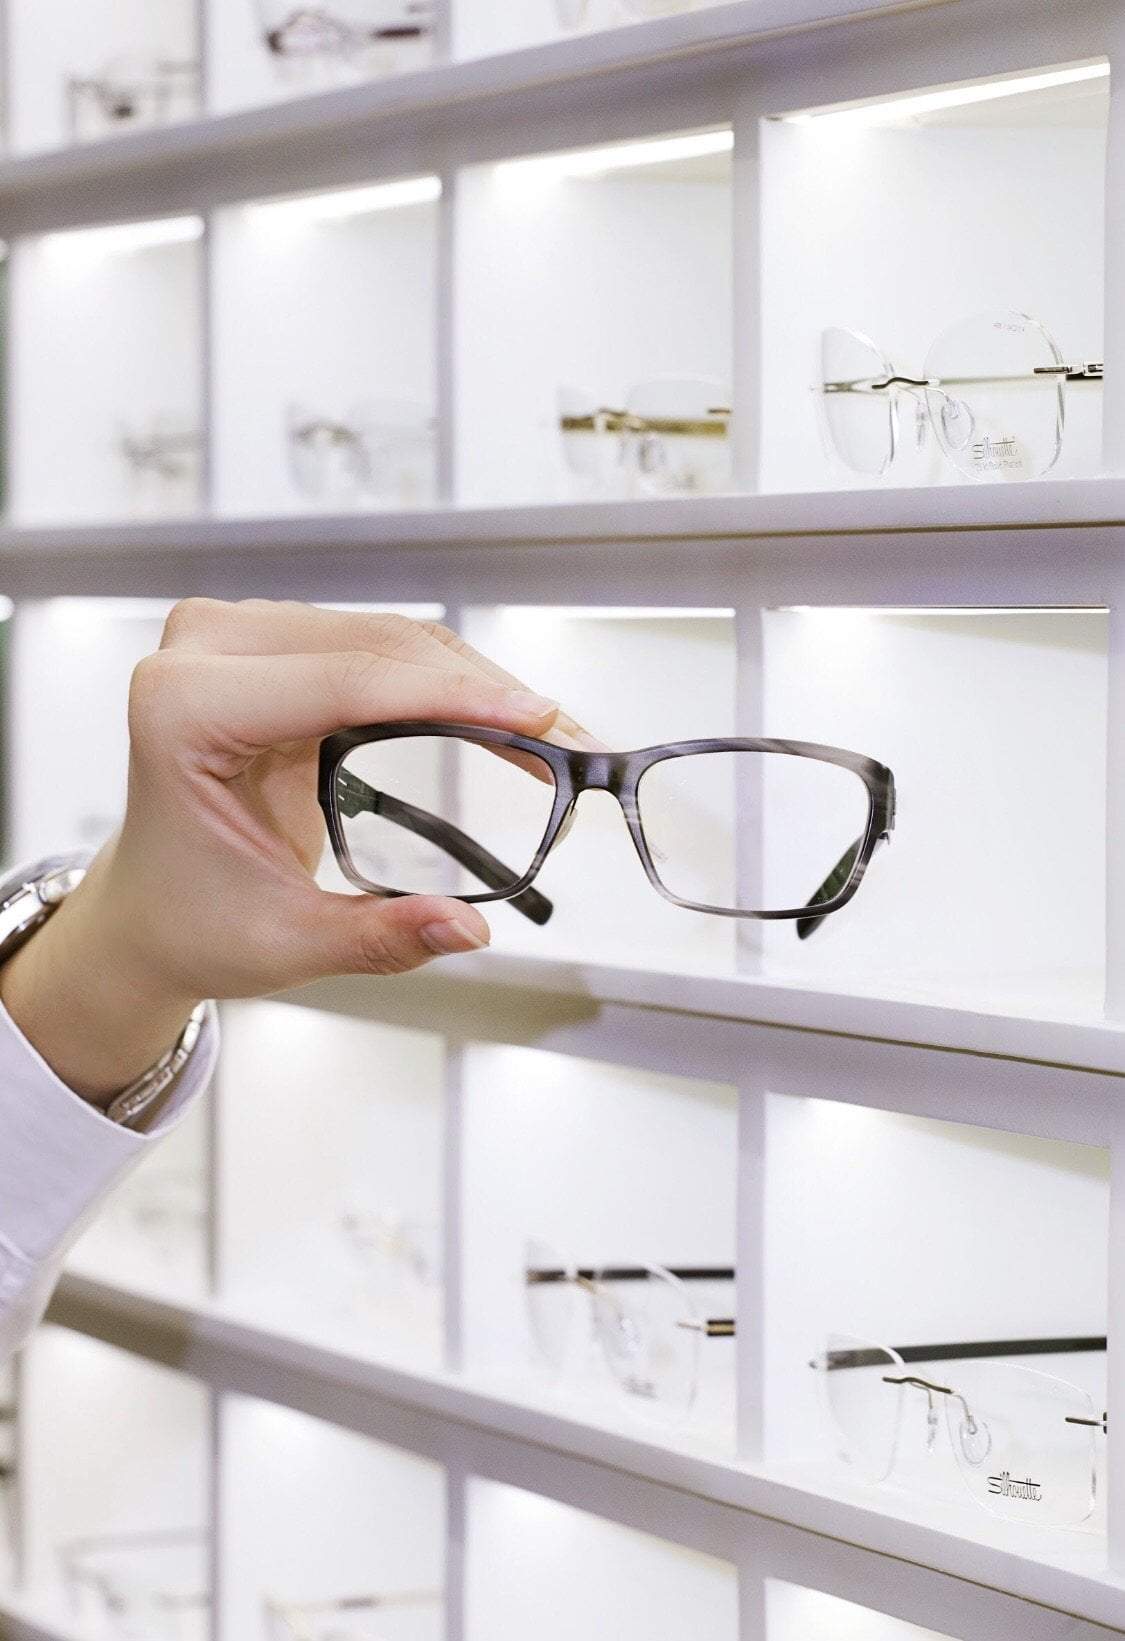 ถ่ายภาพสินค้า (Product) รับถ่ายภาพสินค้า แว่นตาแฟชั่น แว่นสายตา มือถือแว่น